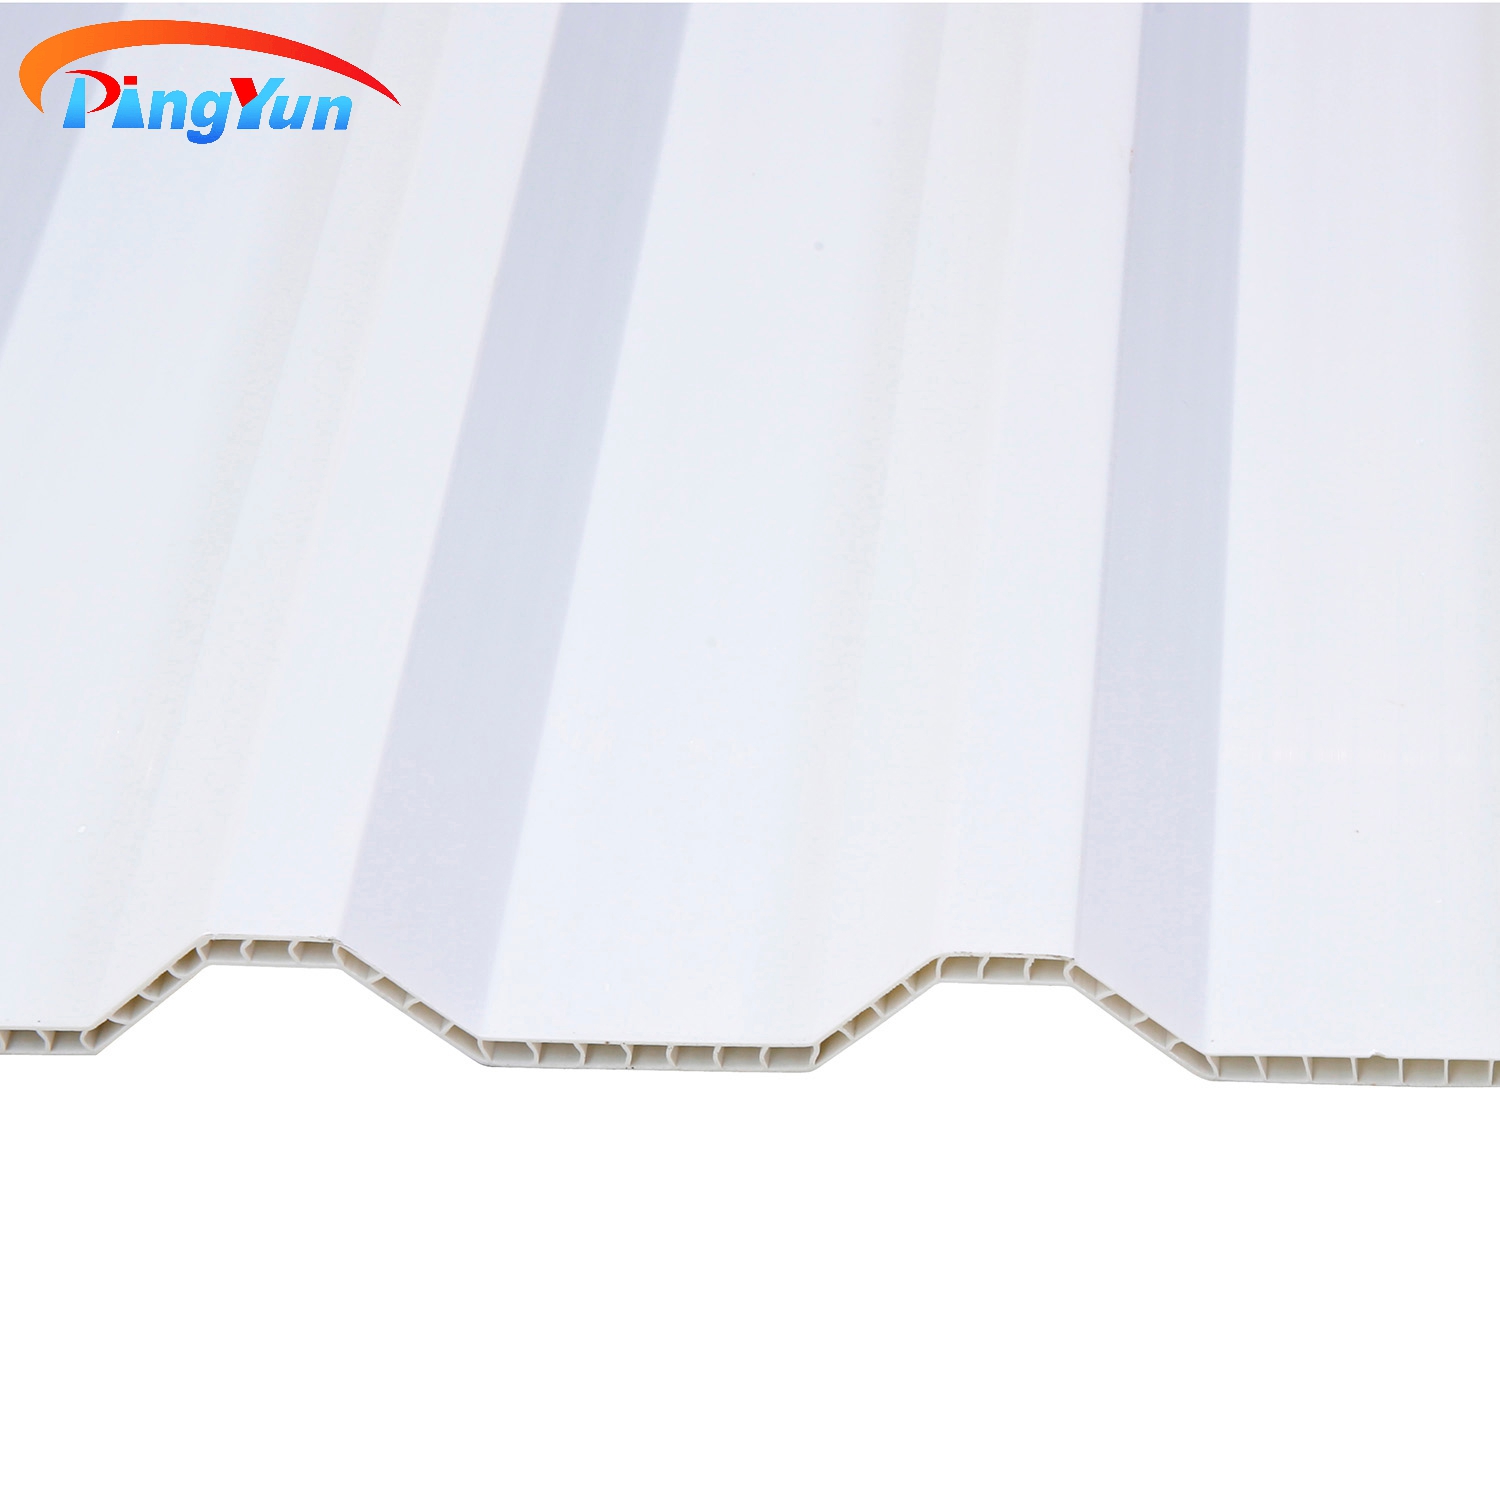 Hoja de techo de PVC hueco de doble pared transparente respetuosa con el medio ambiente